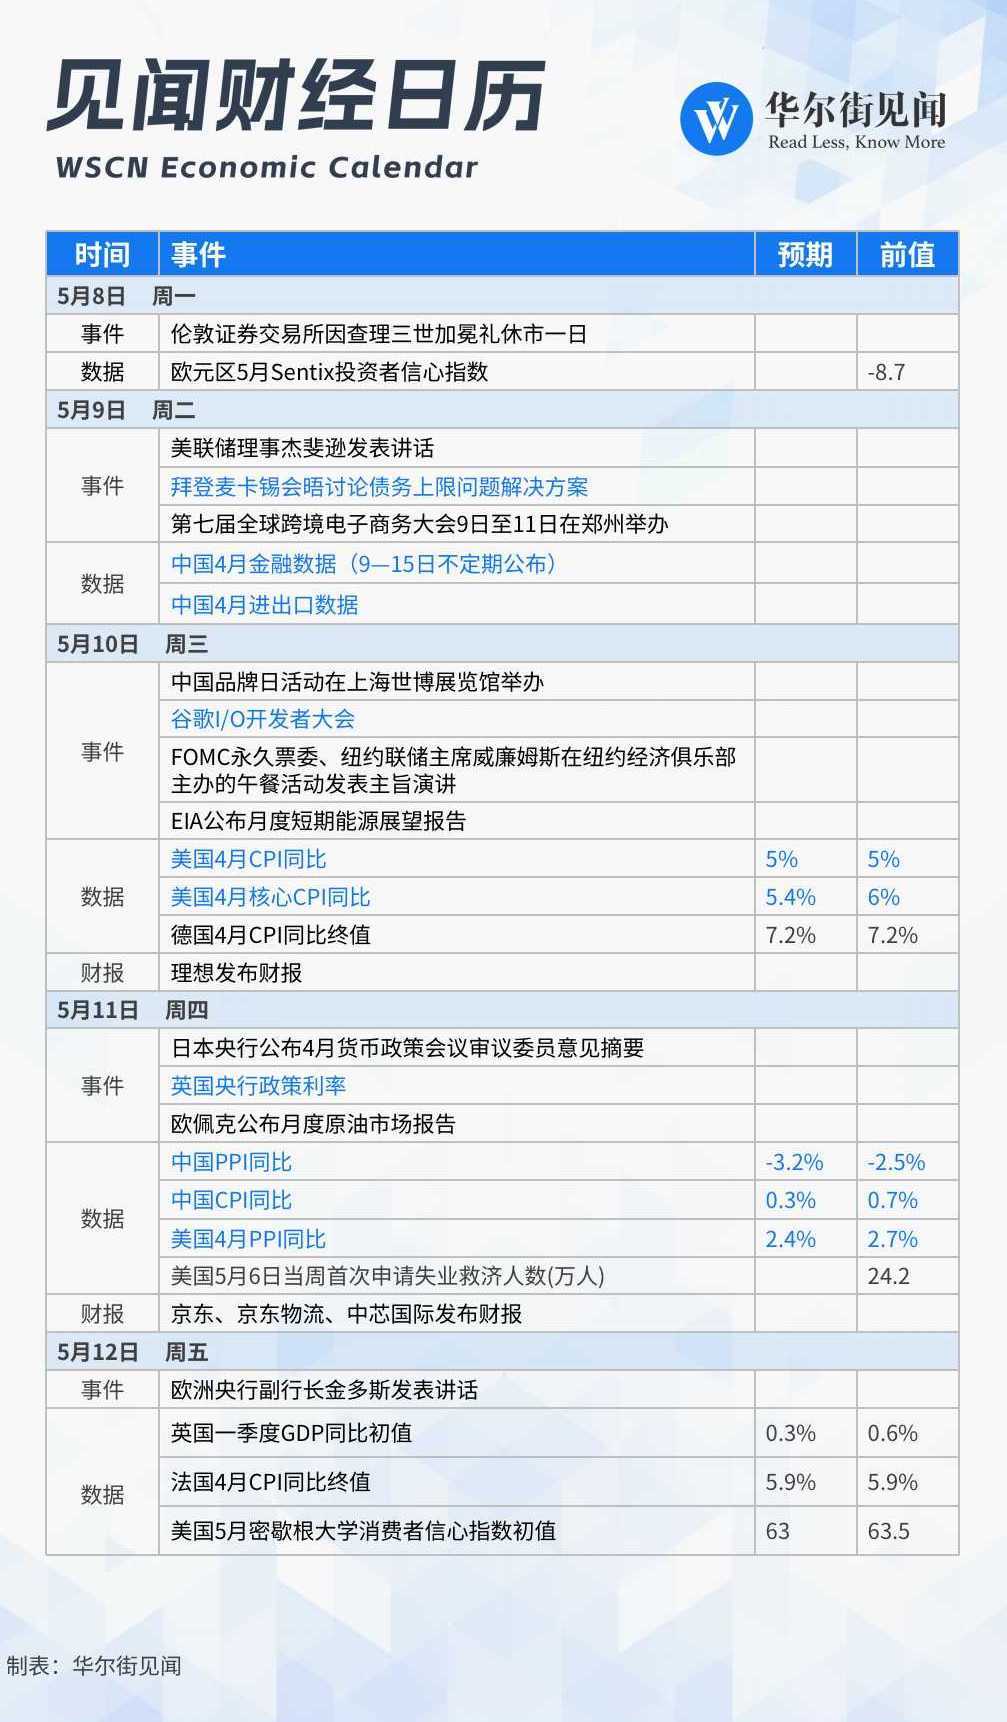 虎牙直播3.8.4苹果版:下周重磅日程：中国4月金融数据，中美4月通胀，谷歌I/O开发者大会